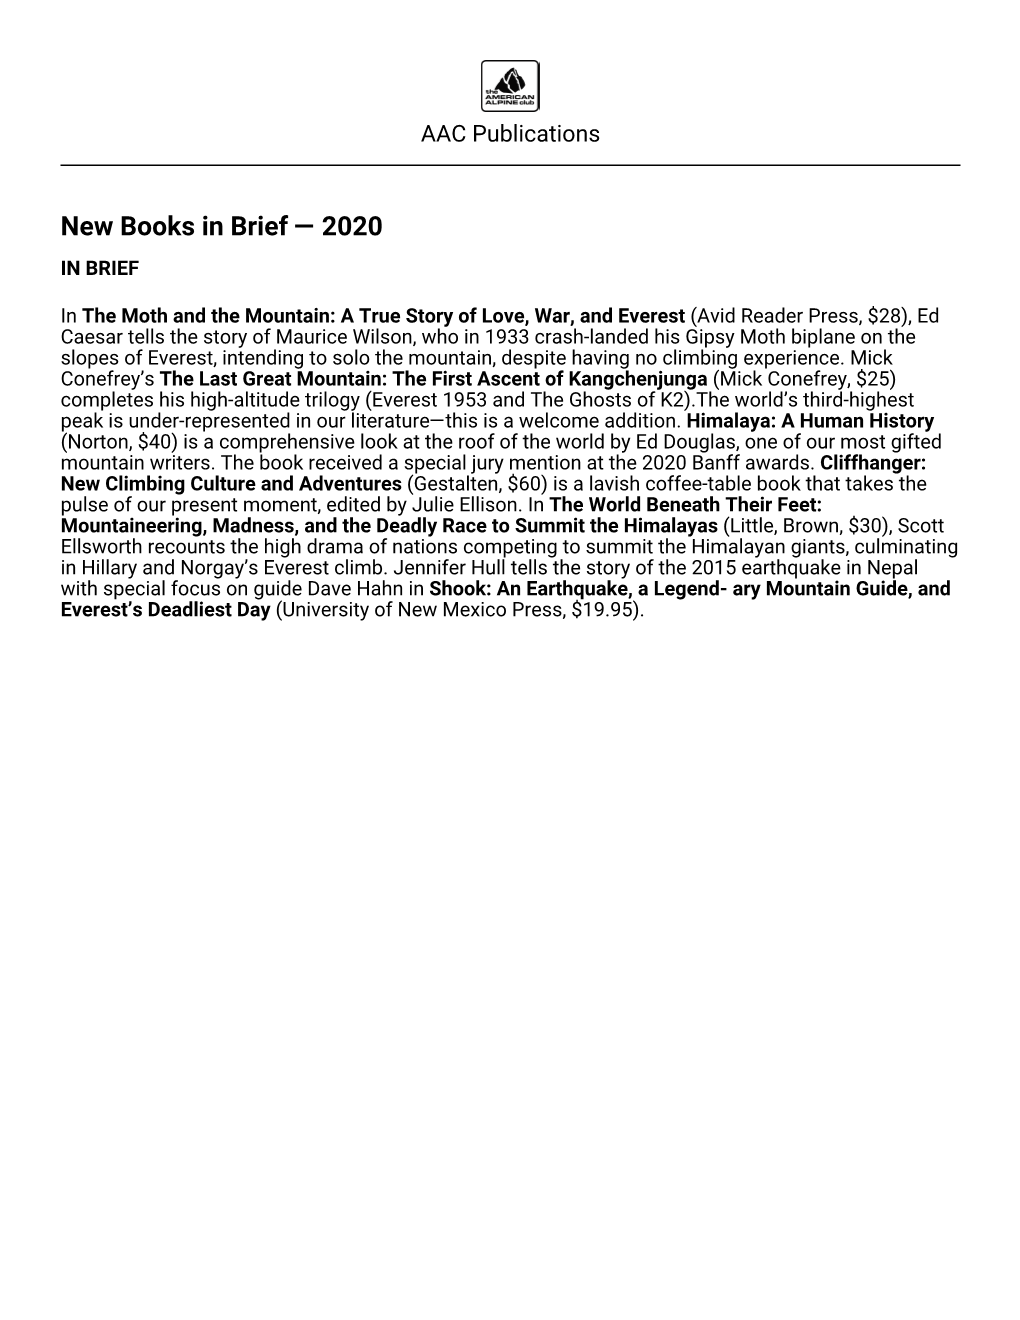 New Books in Brief — 2020 in BRIEF